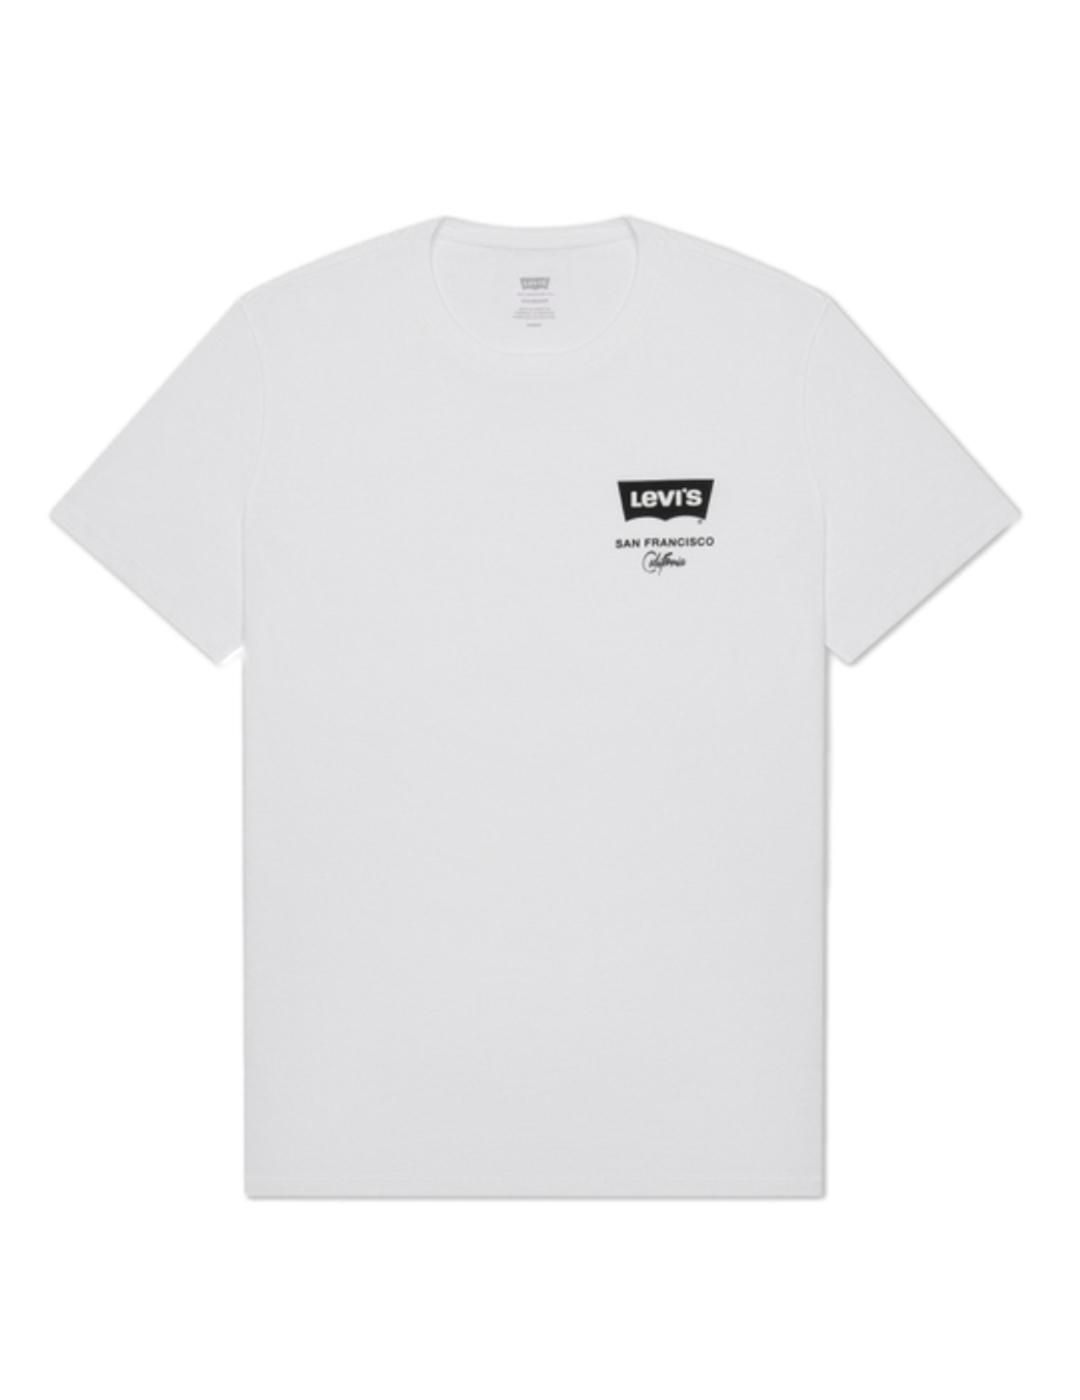 Camiseta Levis Housemark Graphic blanco -z